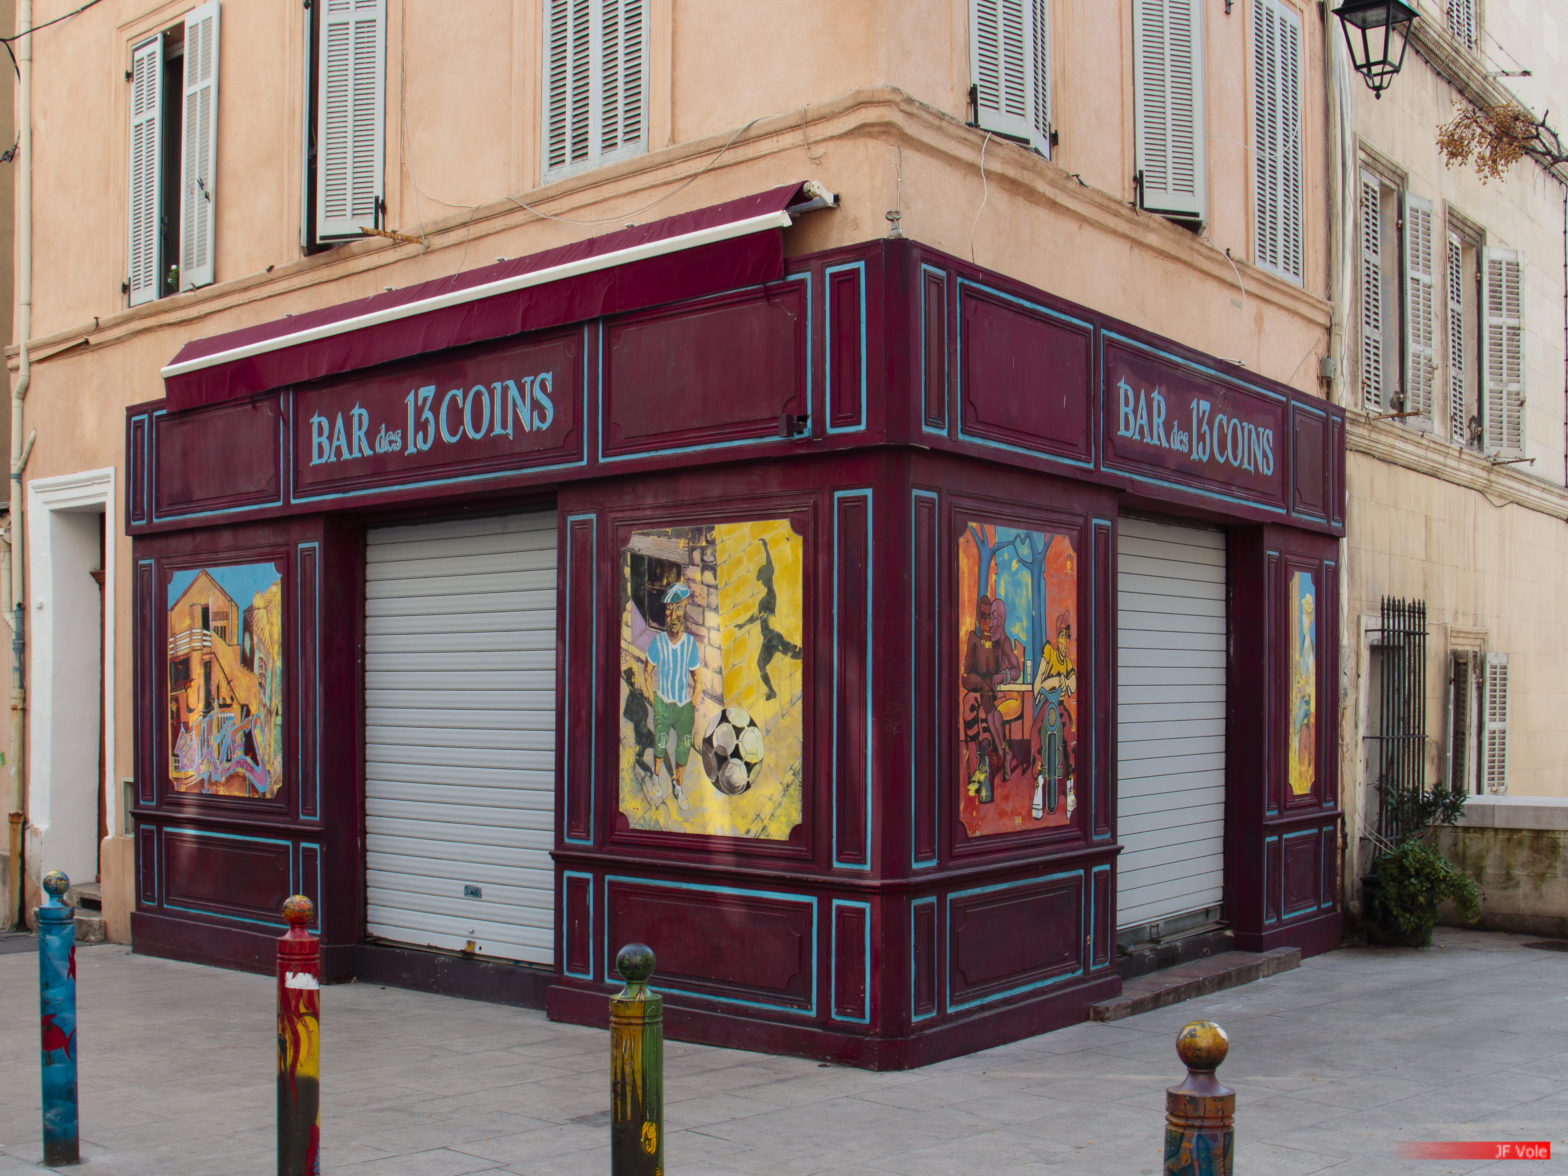 Les 13 coins 2103 Place des Treize-Cantons, Marseille, march 2021.